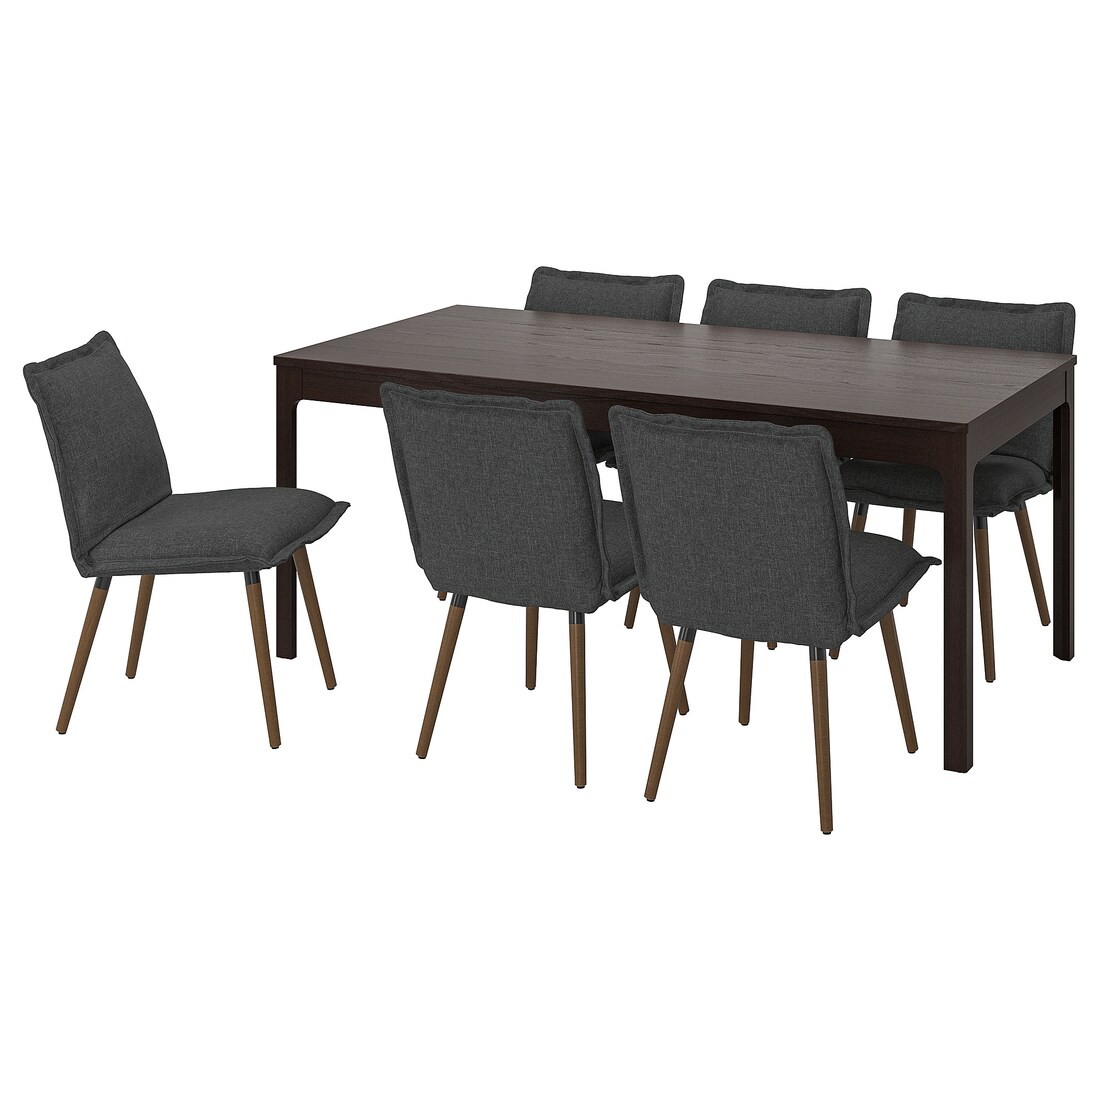 EKEDALEN / KLINTEN Стіл і 6 стільців, темно-коричневий / Kilanda темно-сірий, 180/240 см